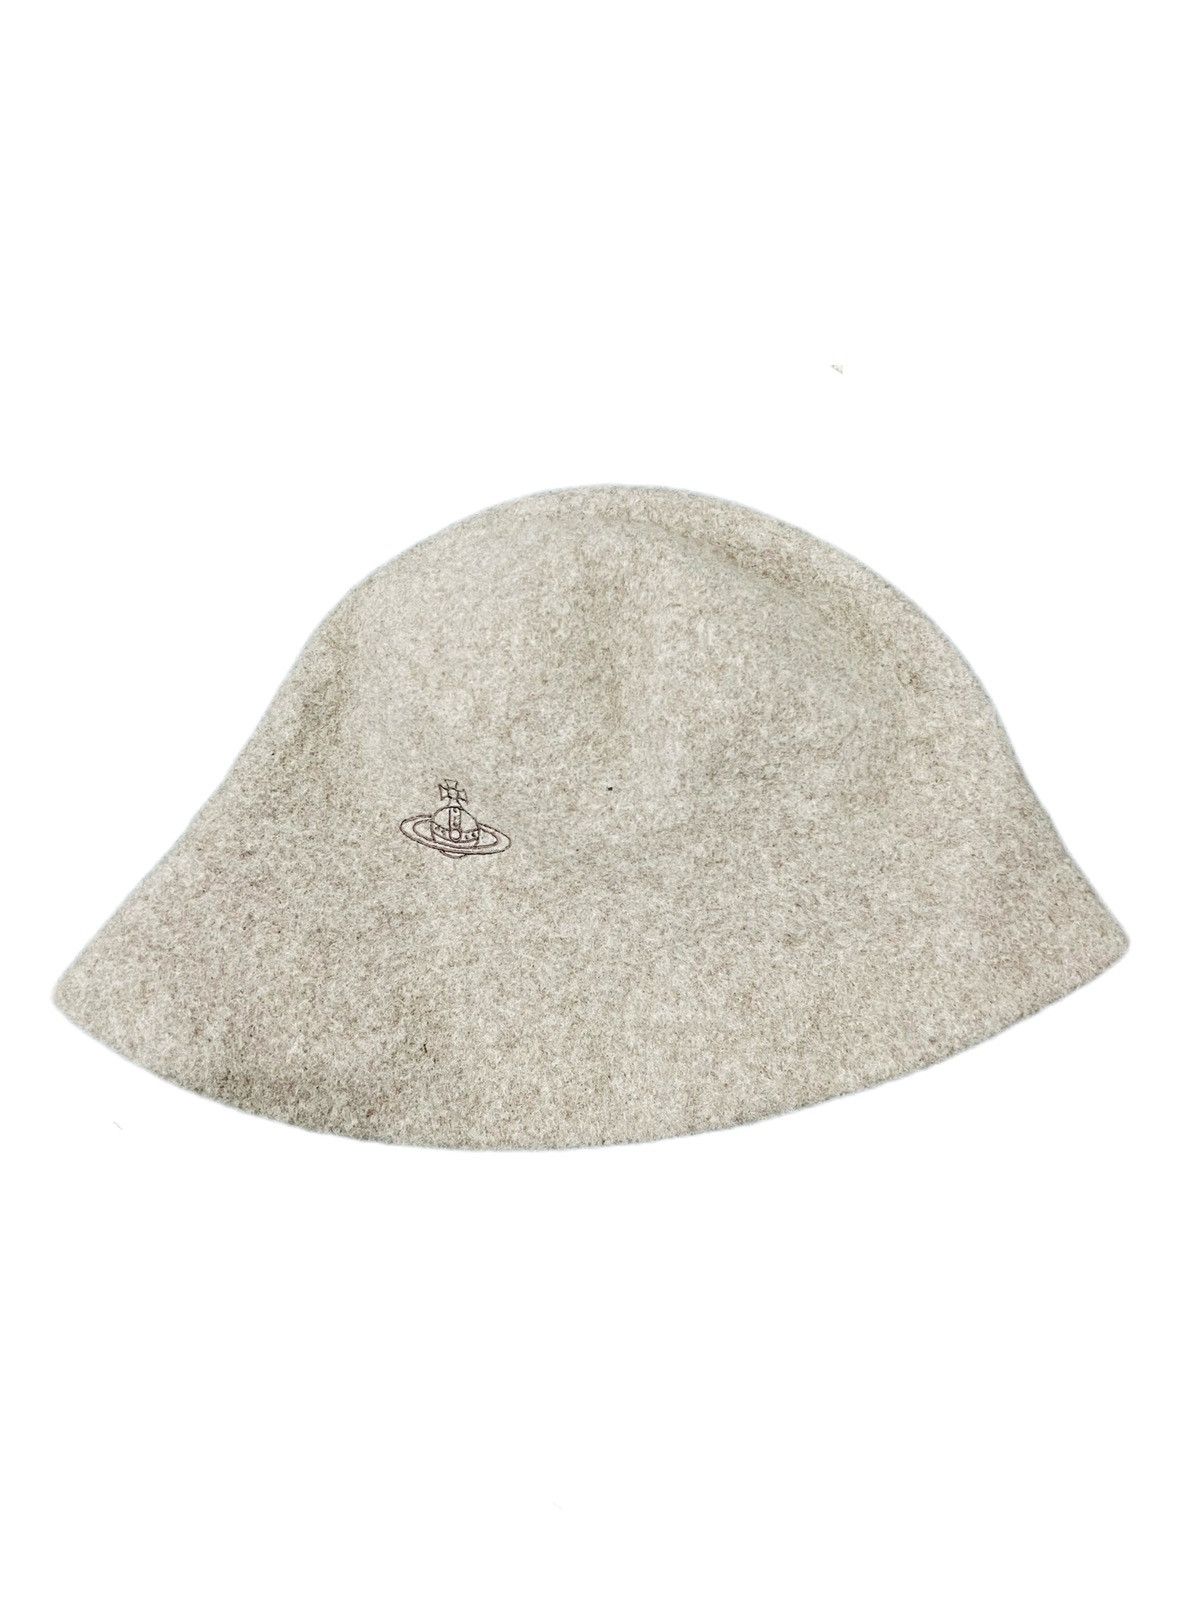 Vivienne Westwood Wool Hat - 2